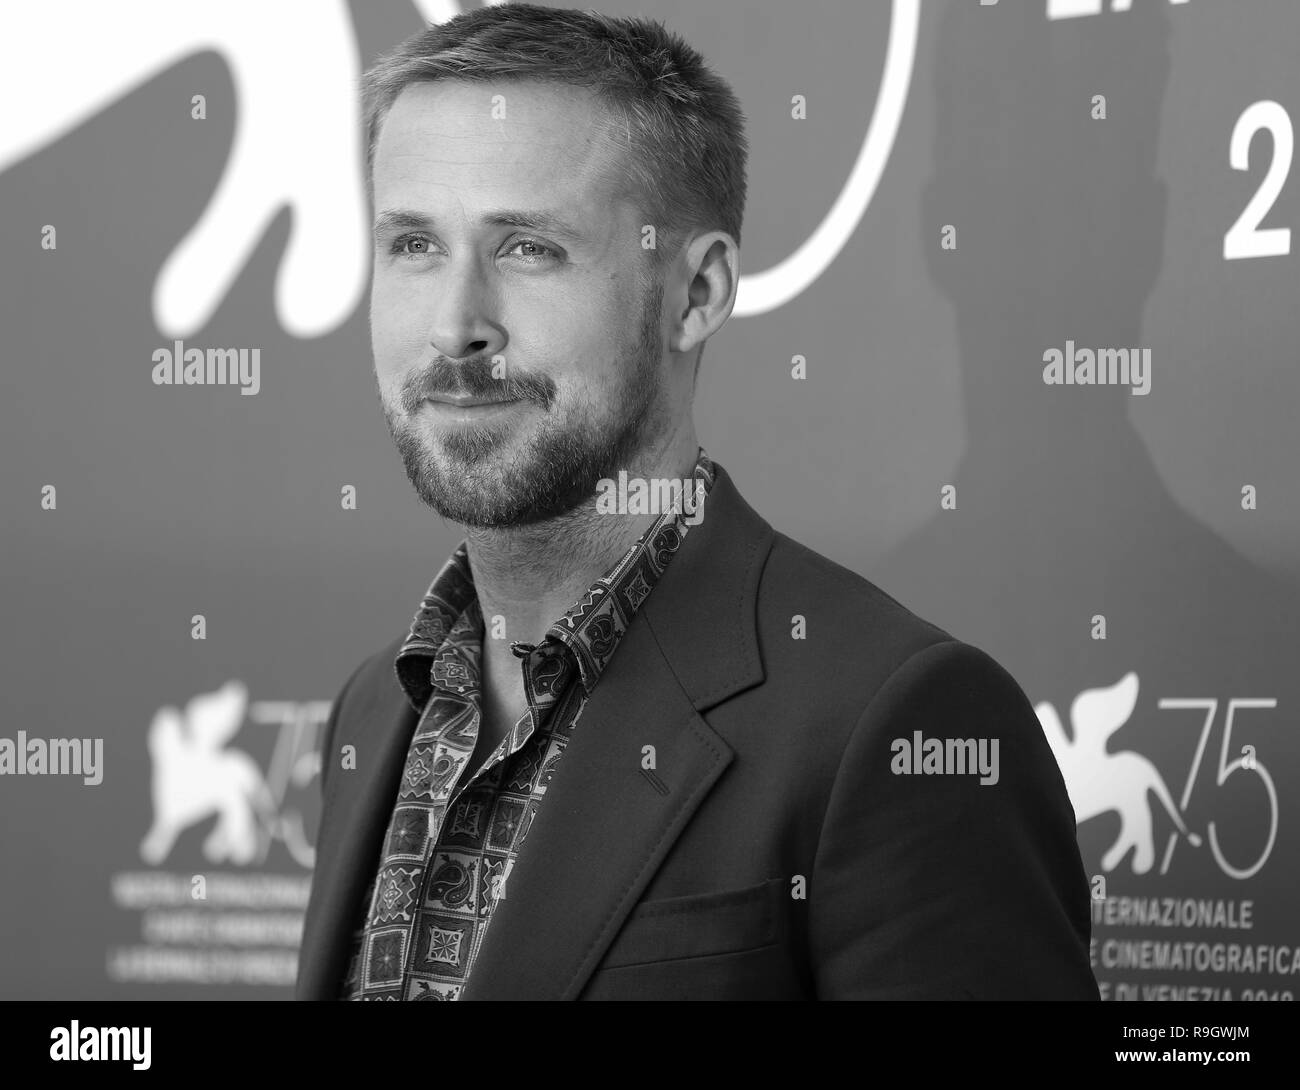 Venedig, Italien - 29.August 2018: Ryan Gosling besucht die "ersten Menschen" Fotoshooting bei den 75. Internationalen Filmfestspielen von Venedig (Ph: Mickael Chavet) Stockfoto